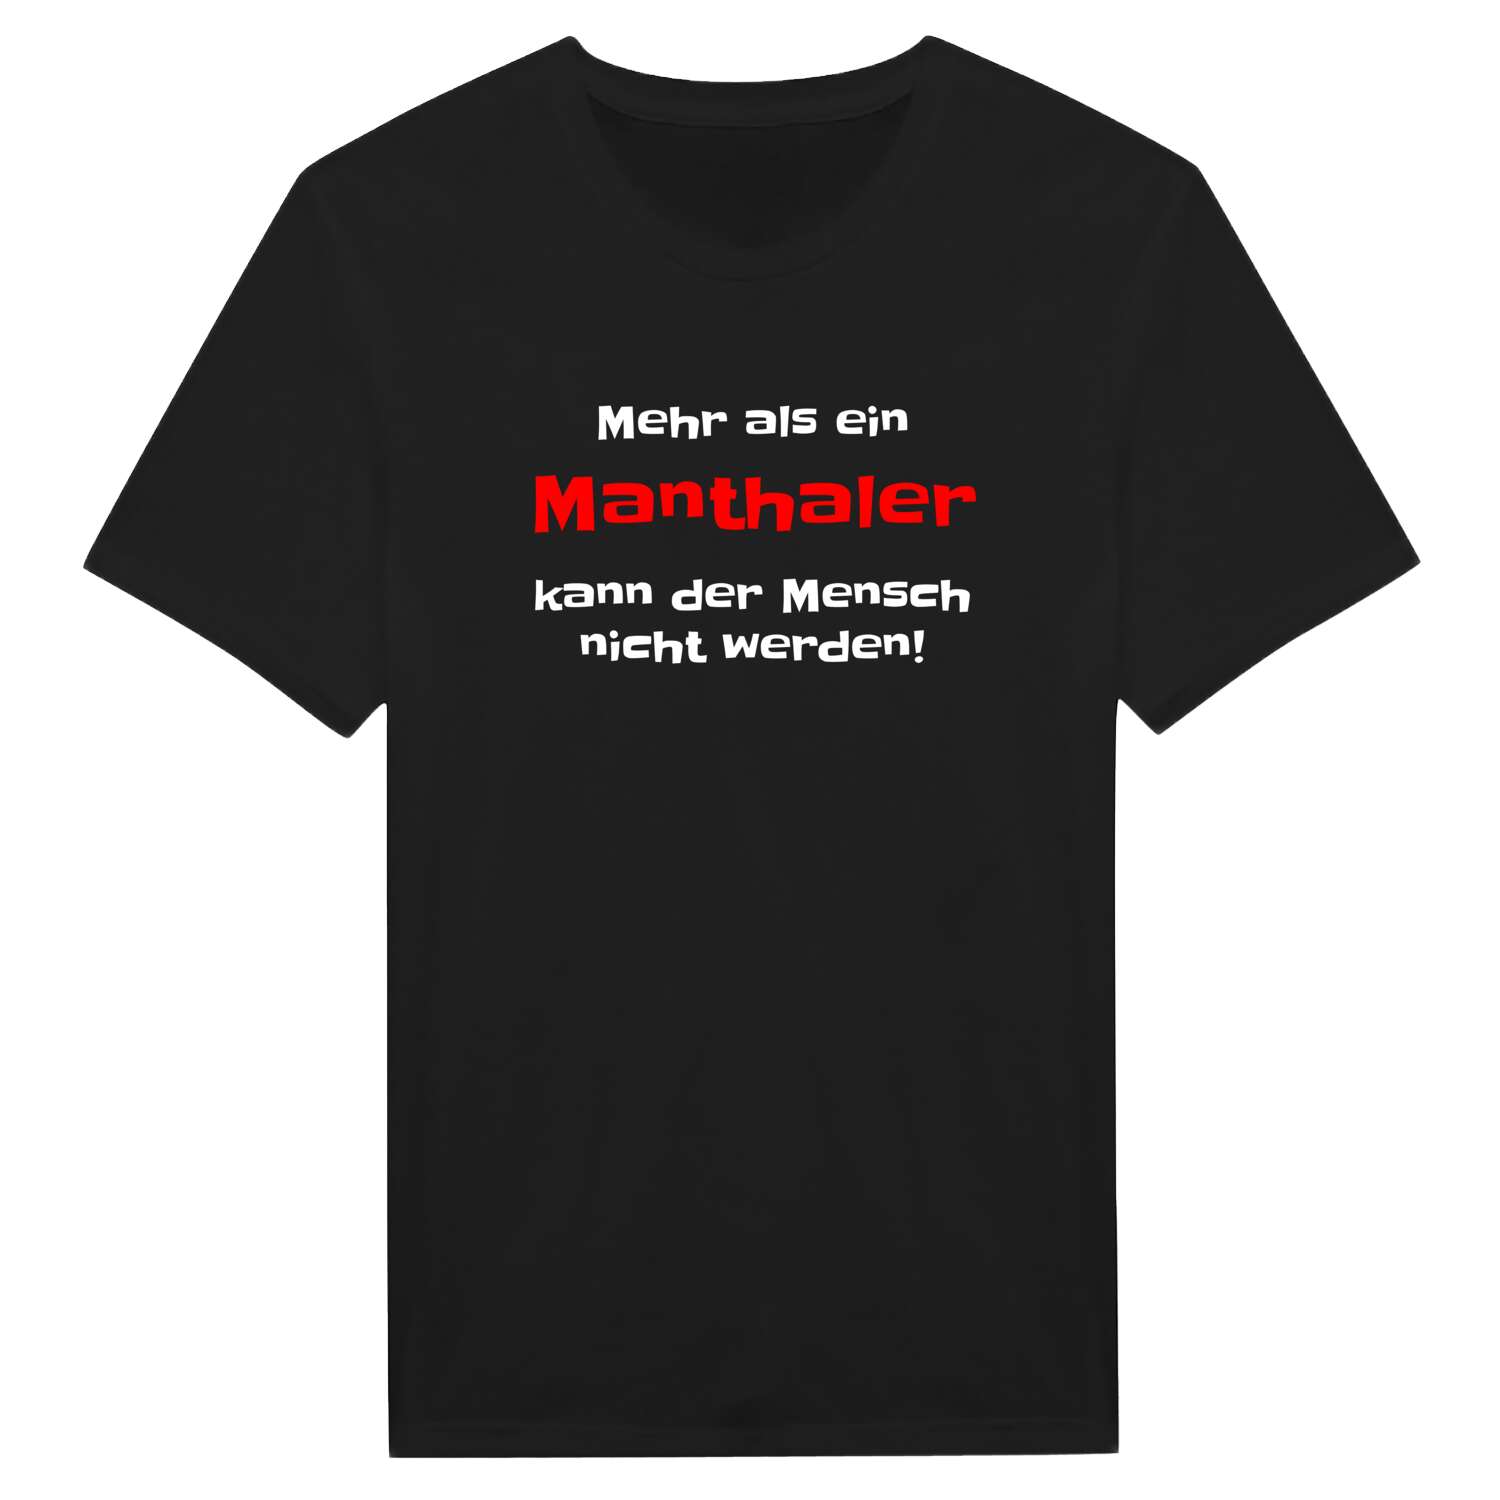 Manthal T-Shirt »Mehr als ein«